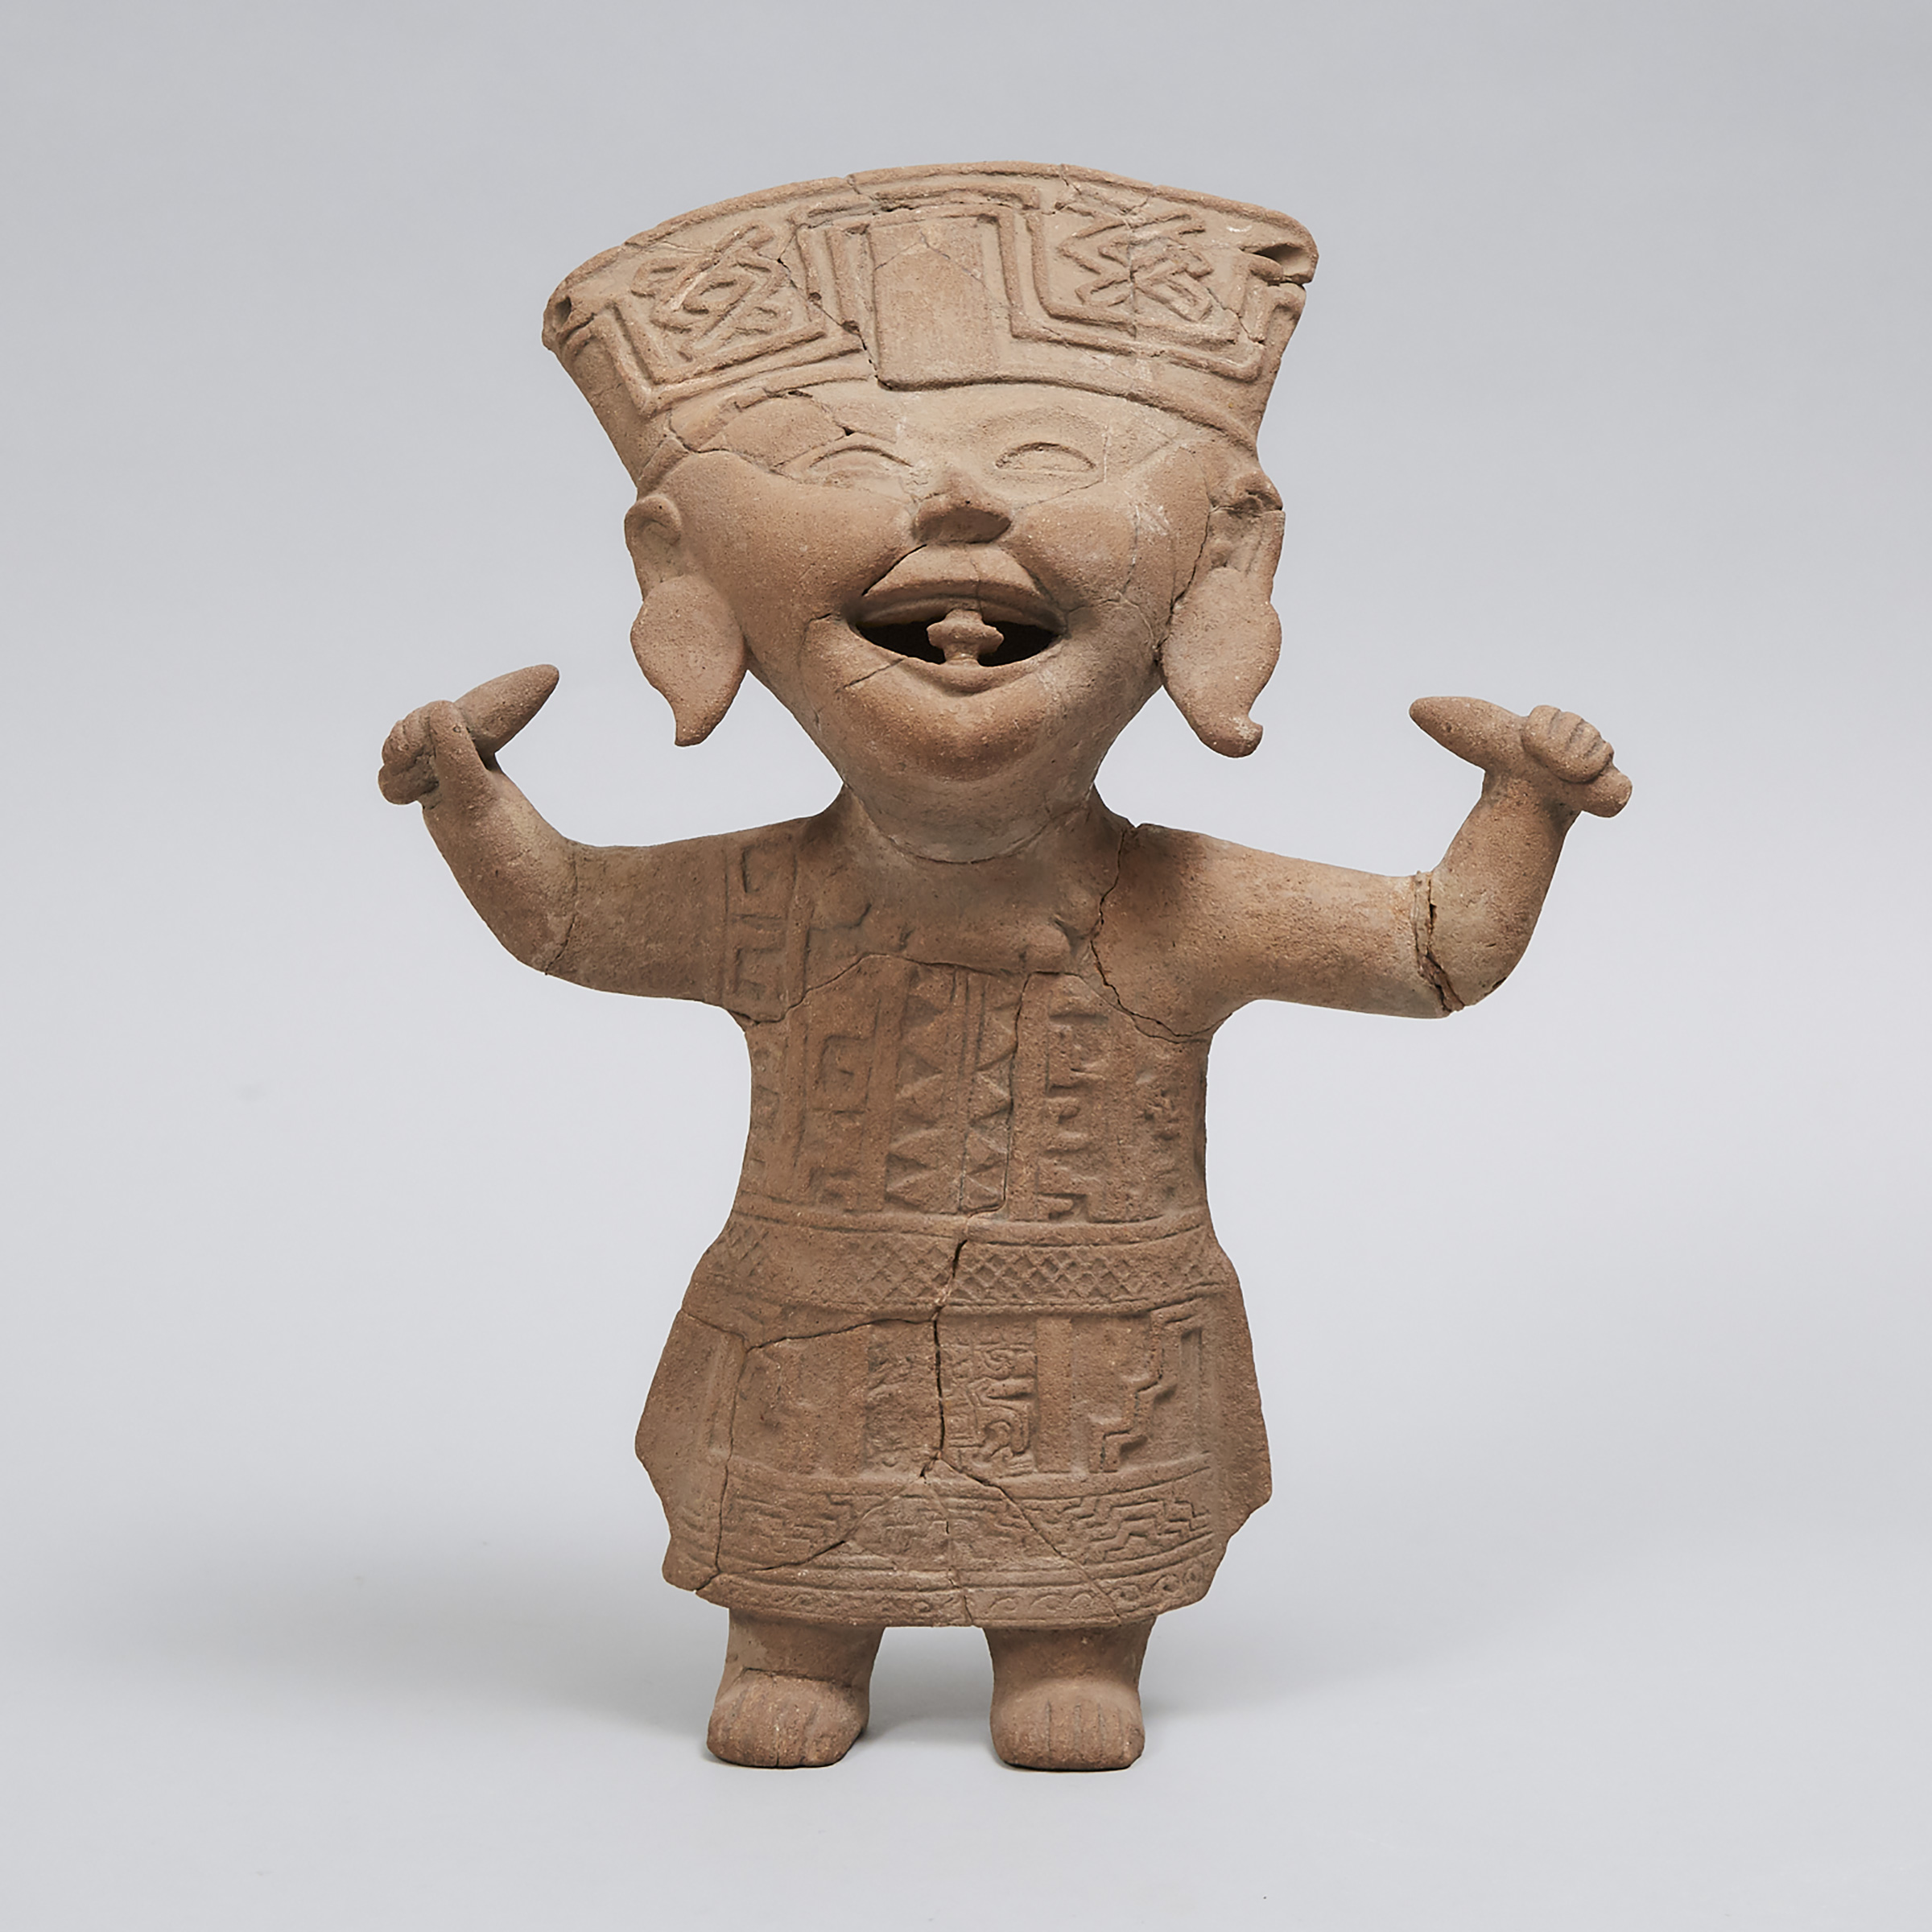 Vercruz Pottery Smiling (Sonrientes) Figure, South East Mexico, 600 - 700 A.D.